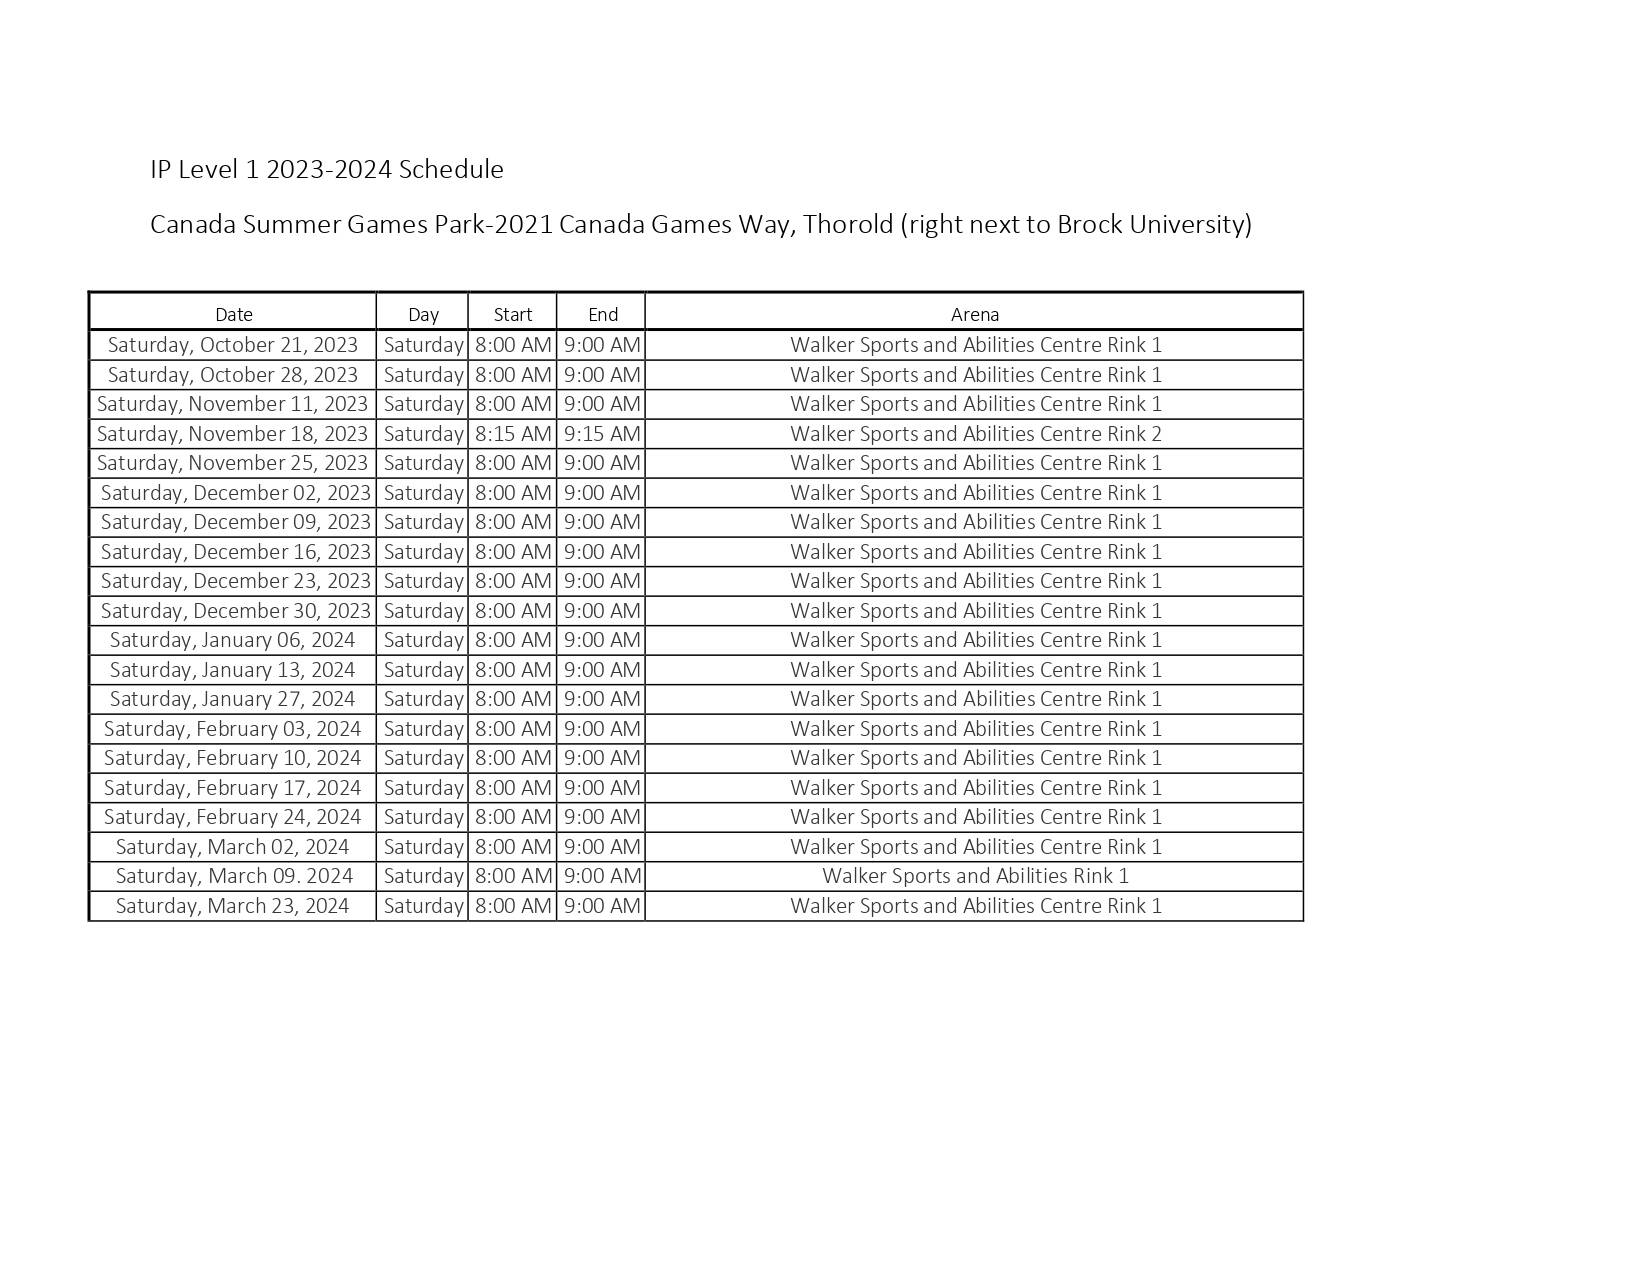 IP_Schedule_Level_1_2023-2024_(1)_page-0001.jpg